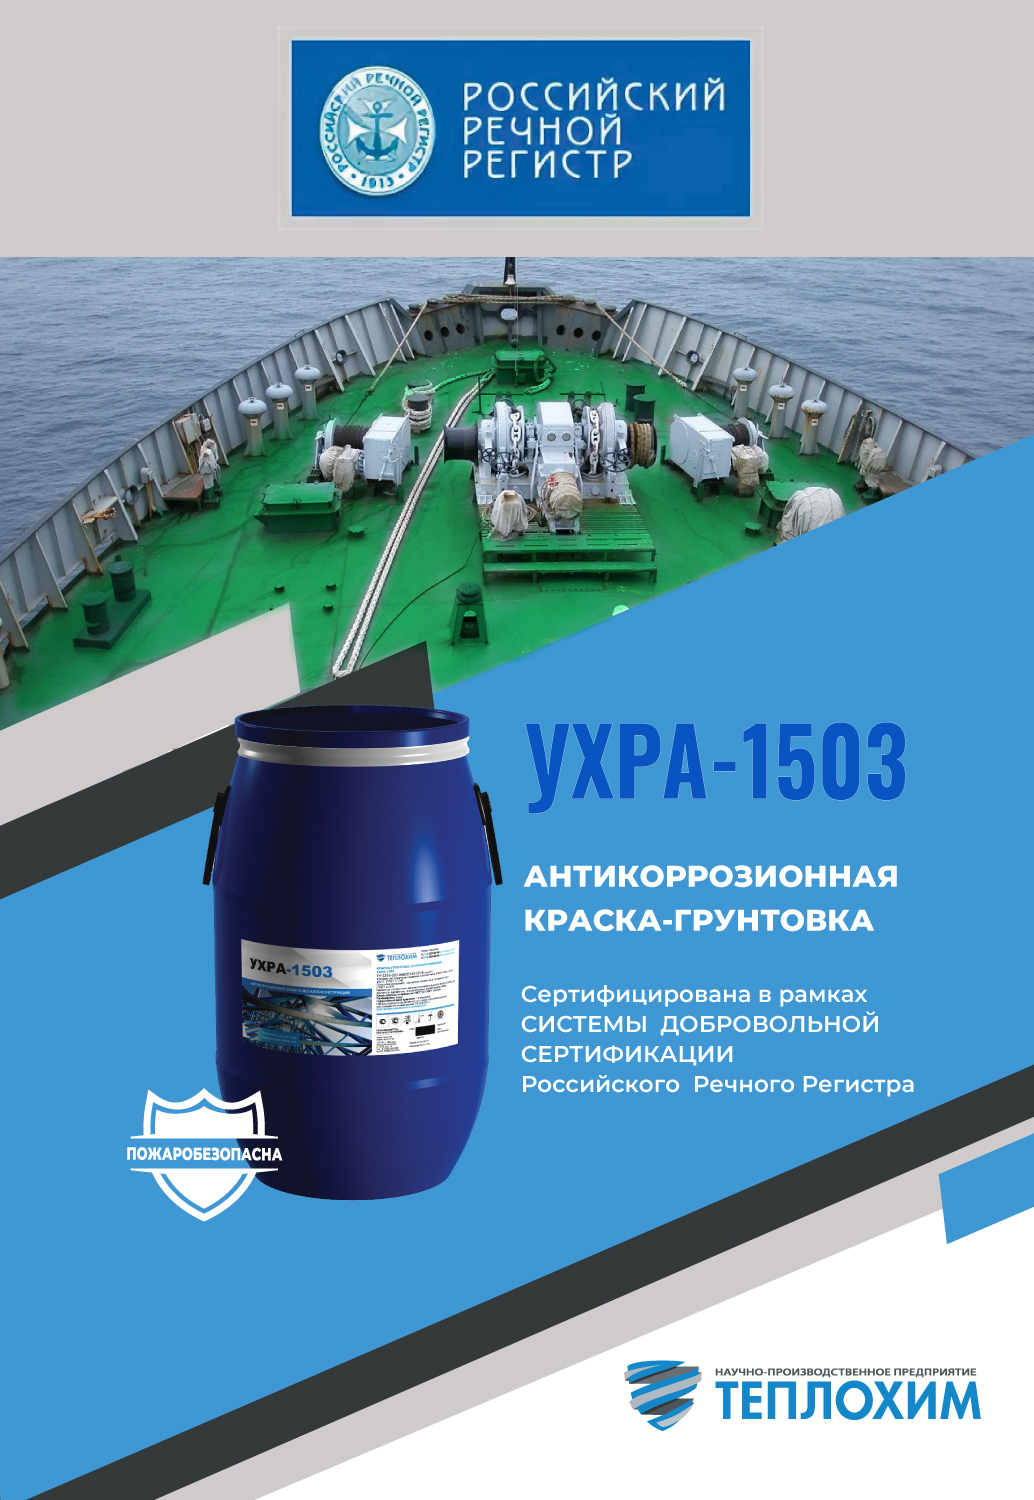 УXPA-1503 сертификация Российского Речного Регистра